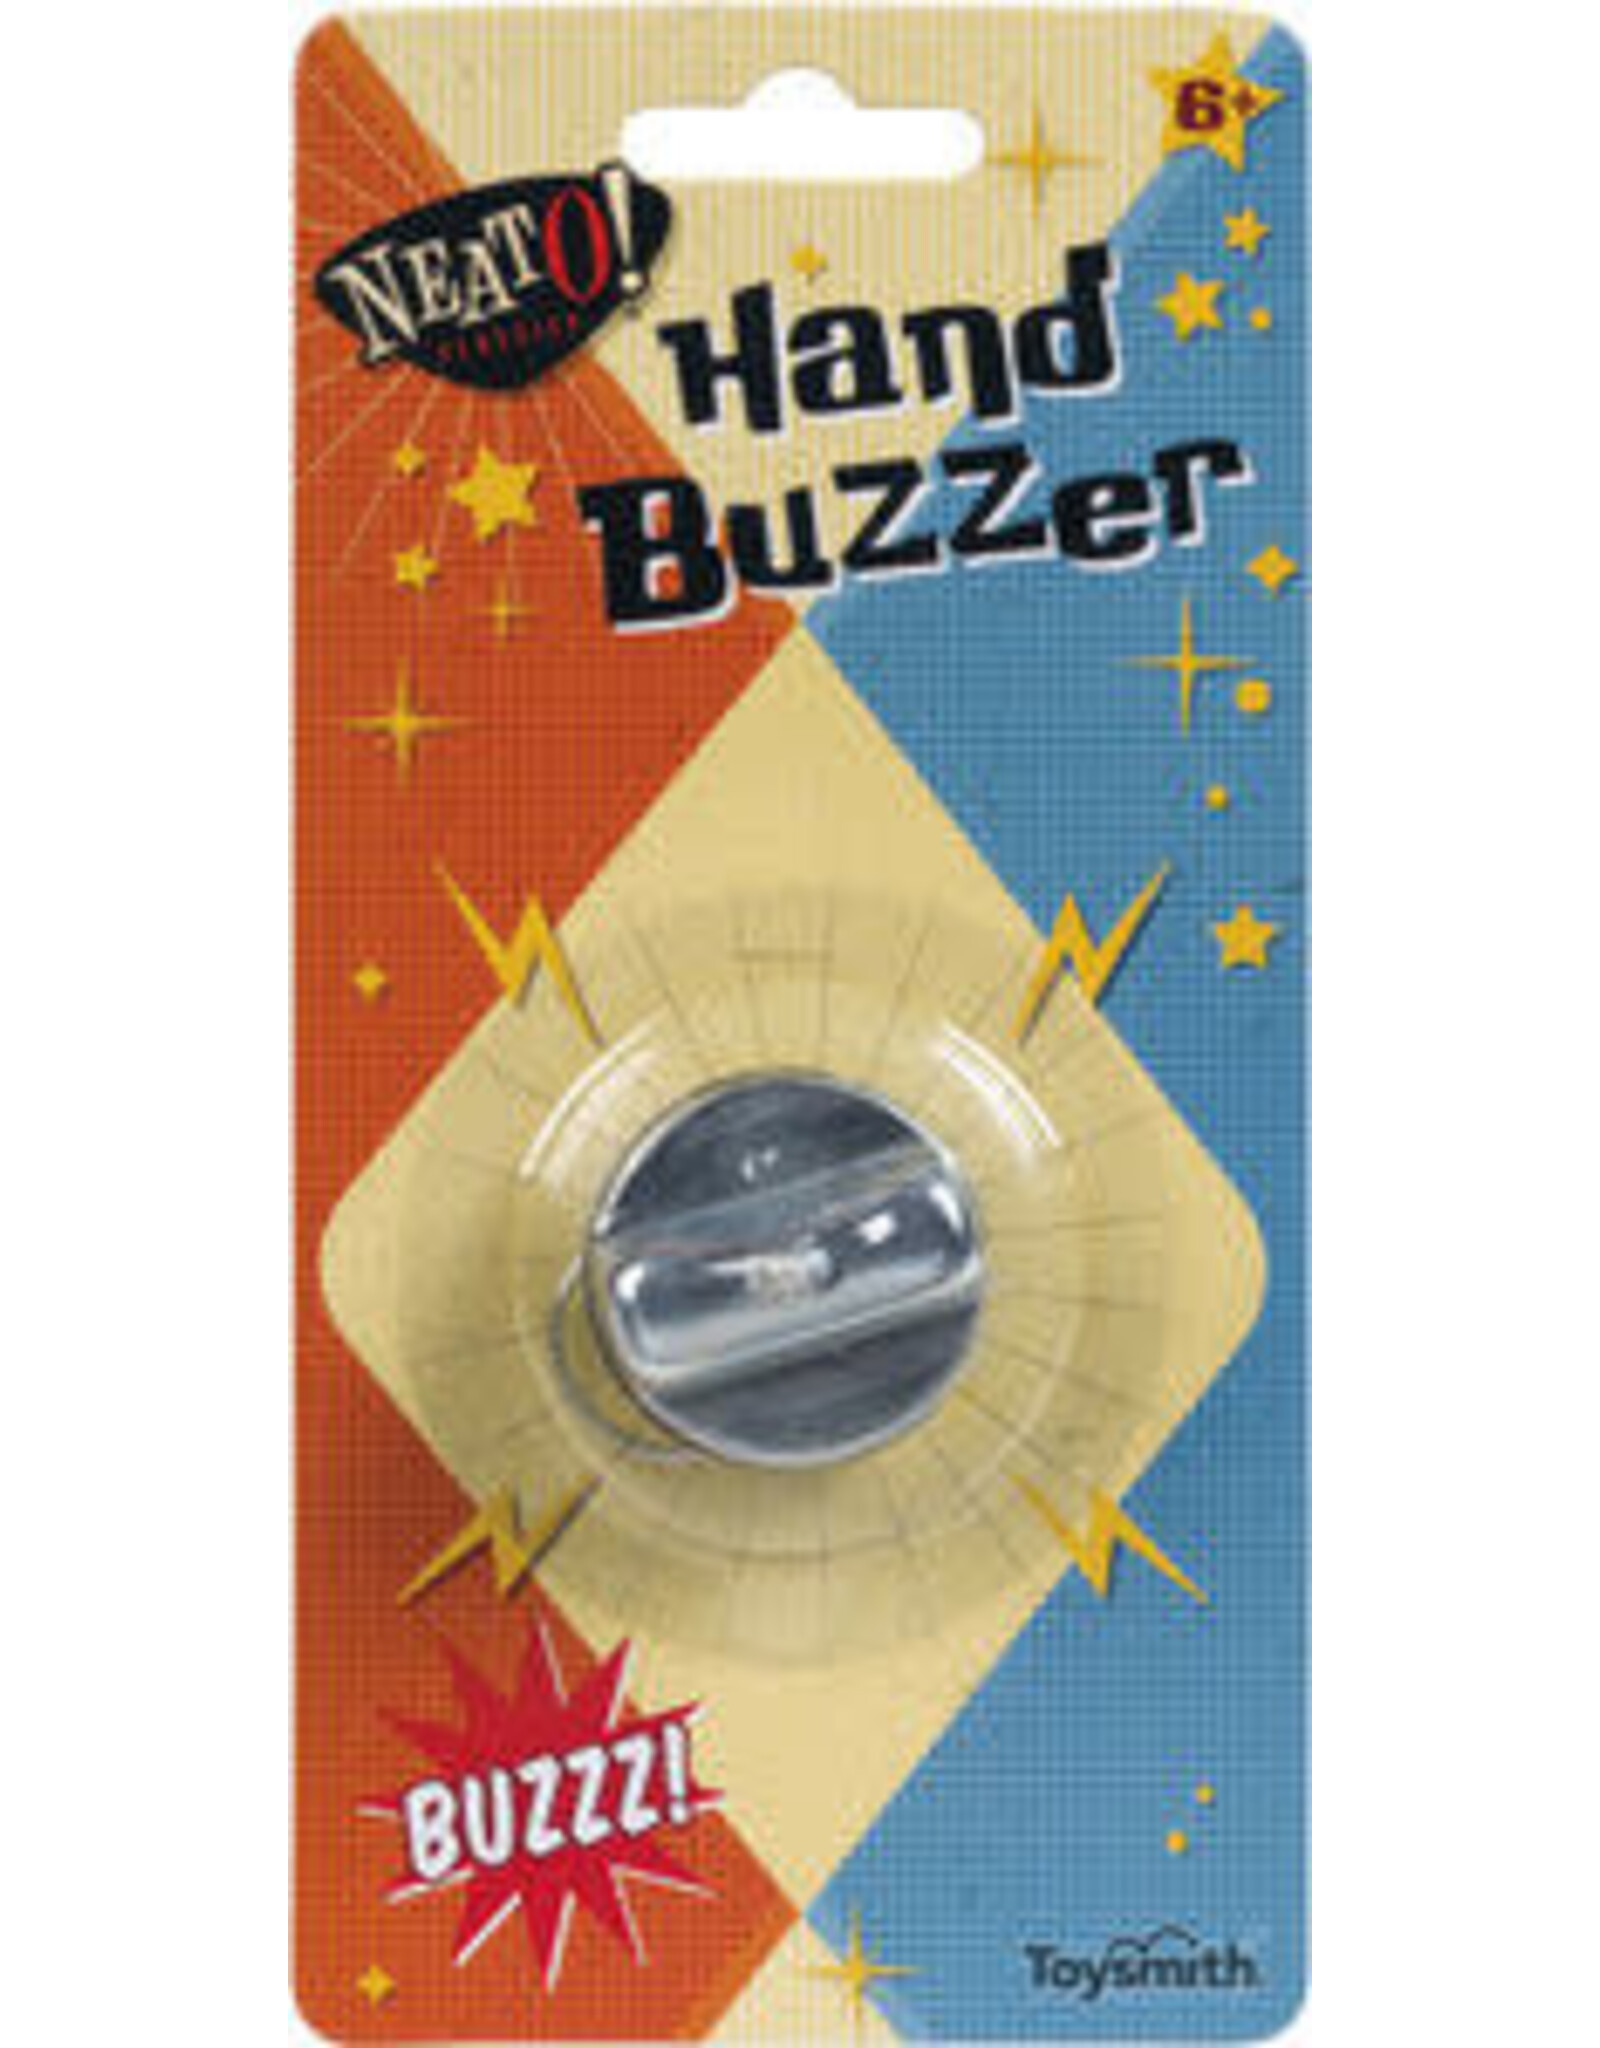 Neato! Hand Buzzer